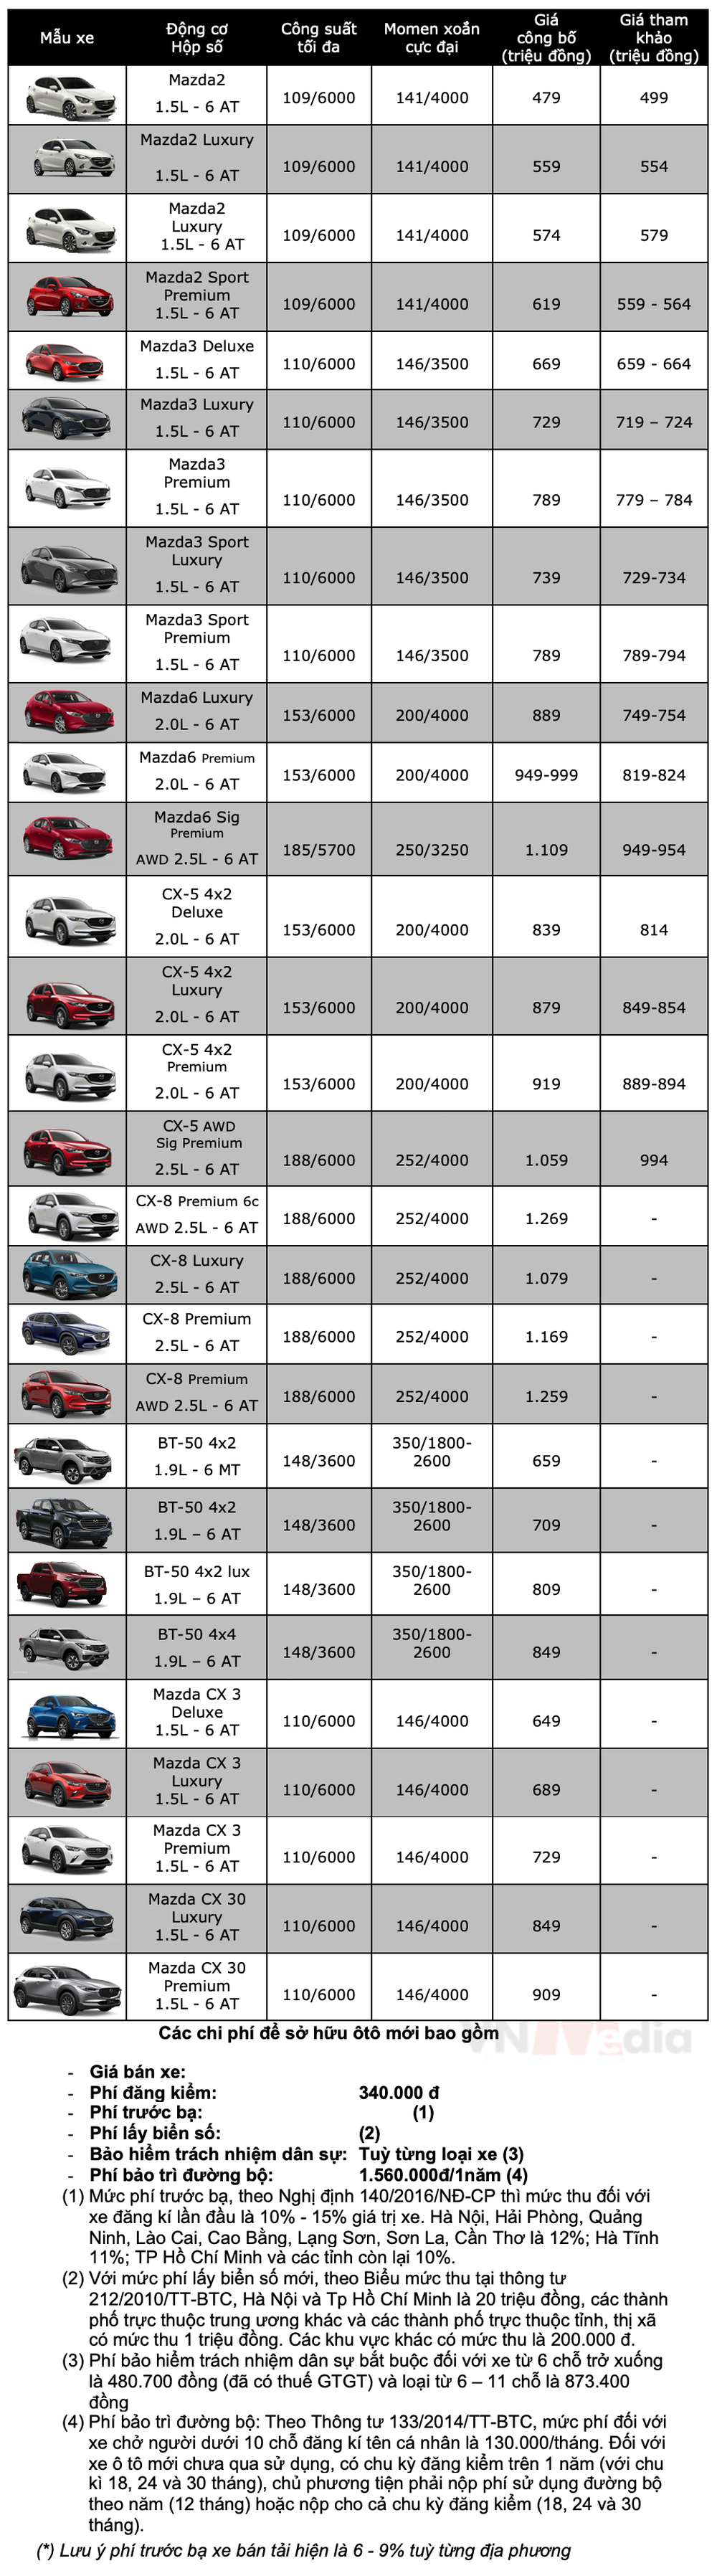 Bảng giá xe Mazda tháng 1: Mazda CX-5 được giảm 60 triệu đồng - Ảnh 2.